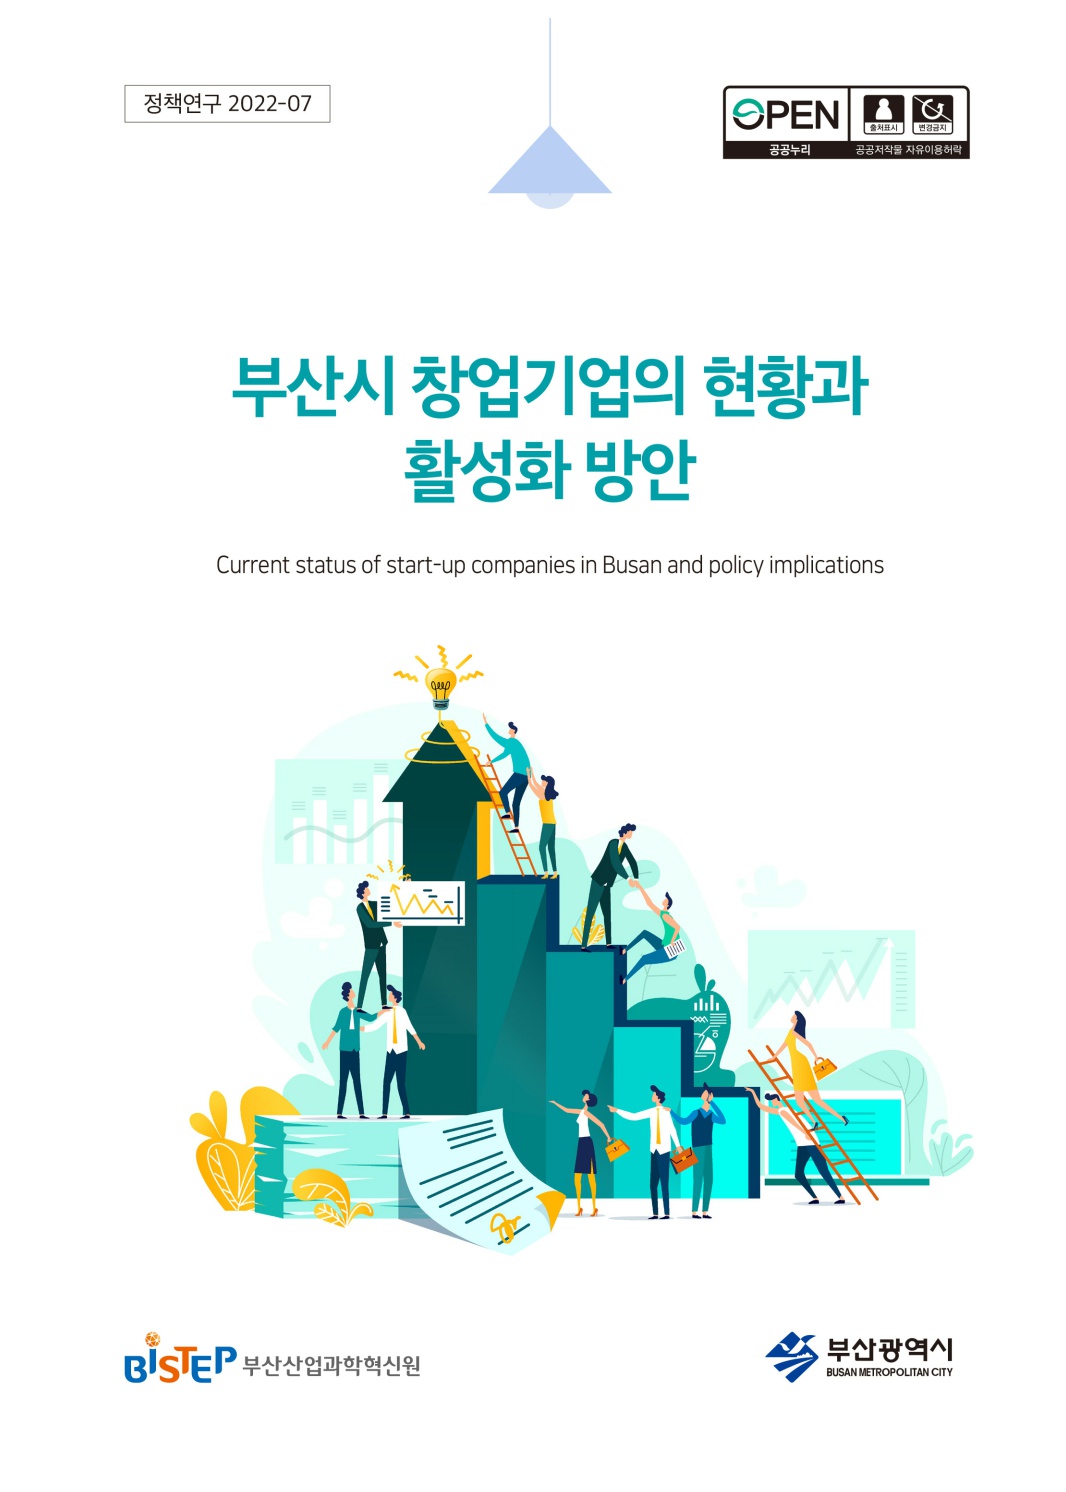 보고서_부산시 창업기업의 현황과 활성화 방안 편집_1.jpg